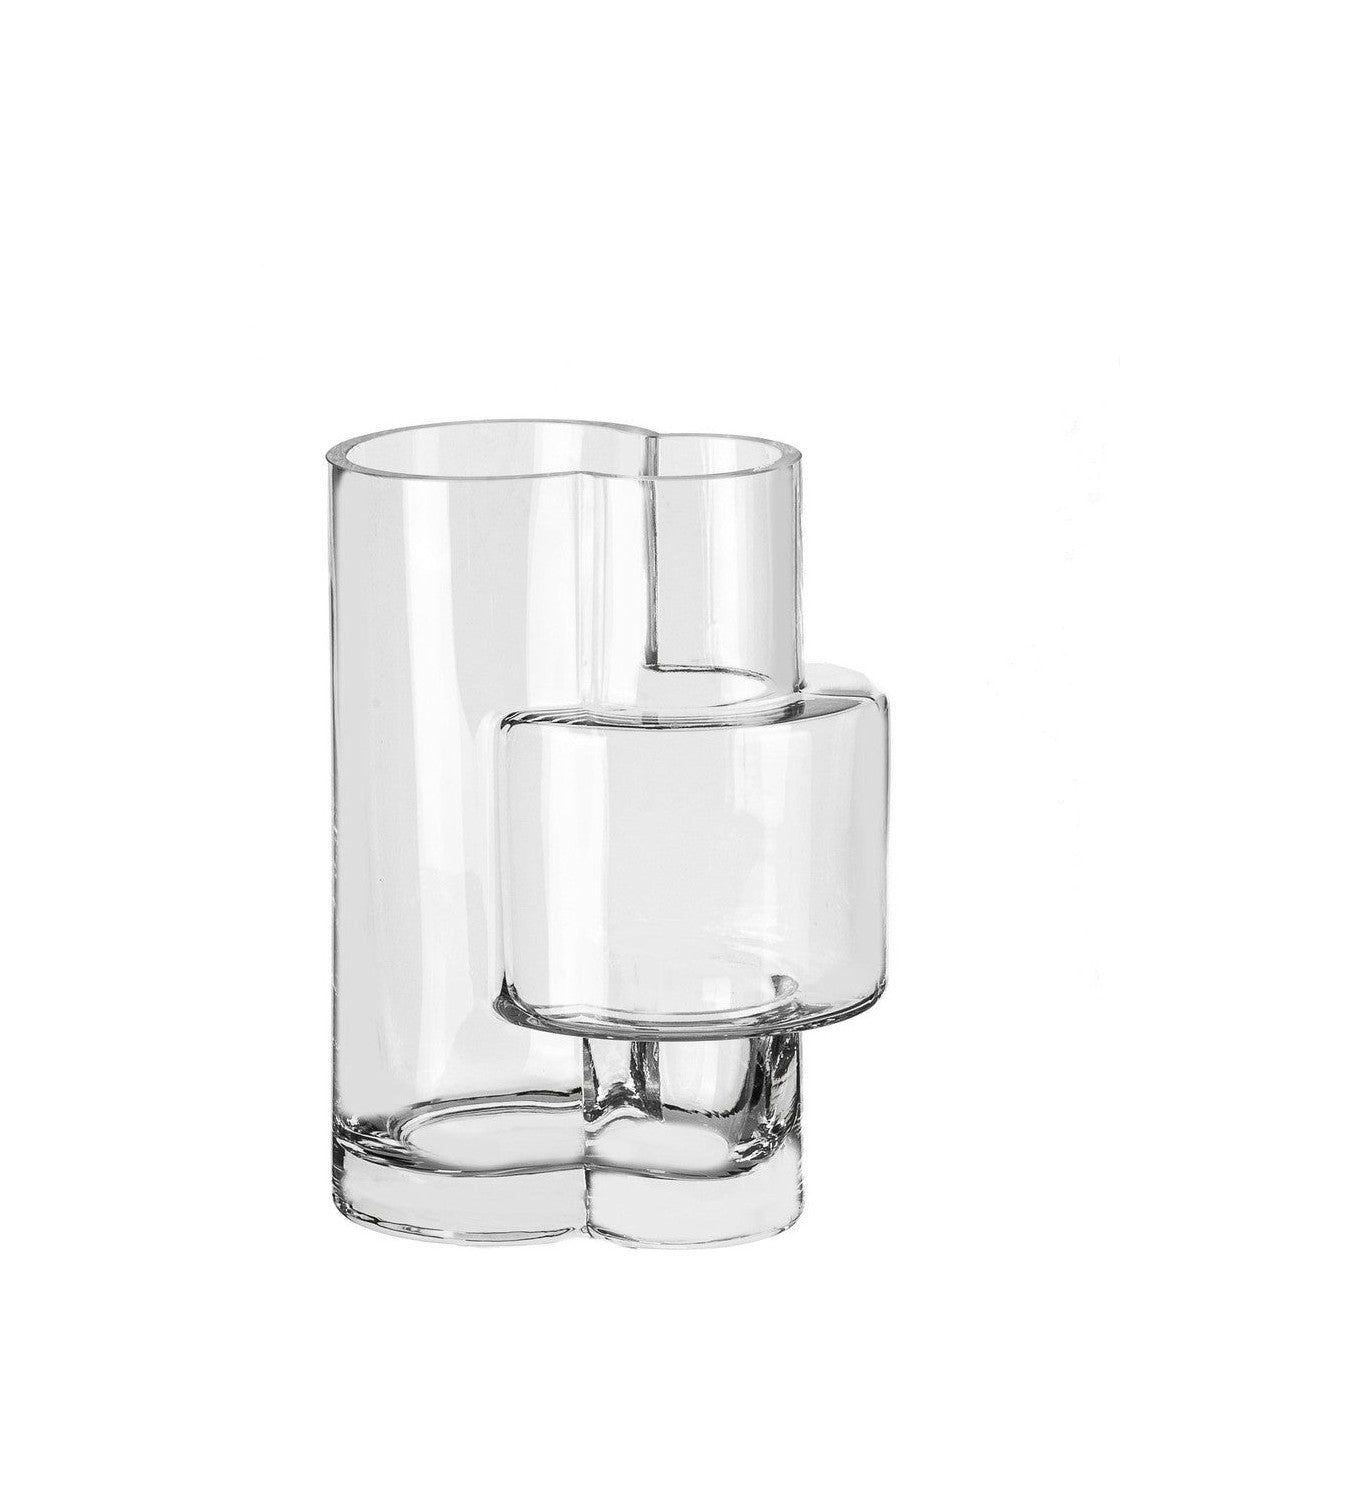 建构主义风格的现代花瓶，顶级设计，Fusio 25透明玻璃